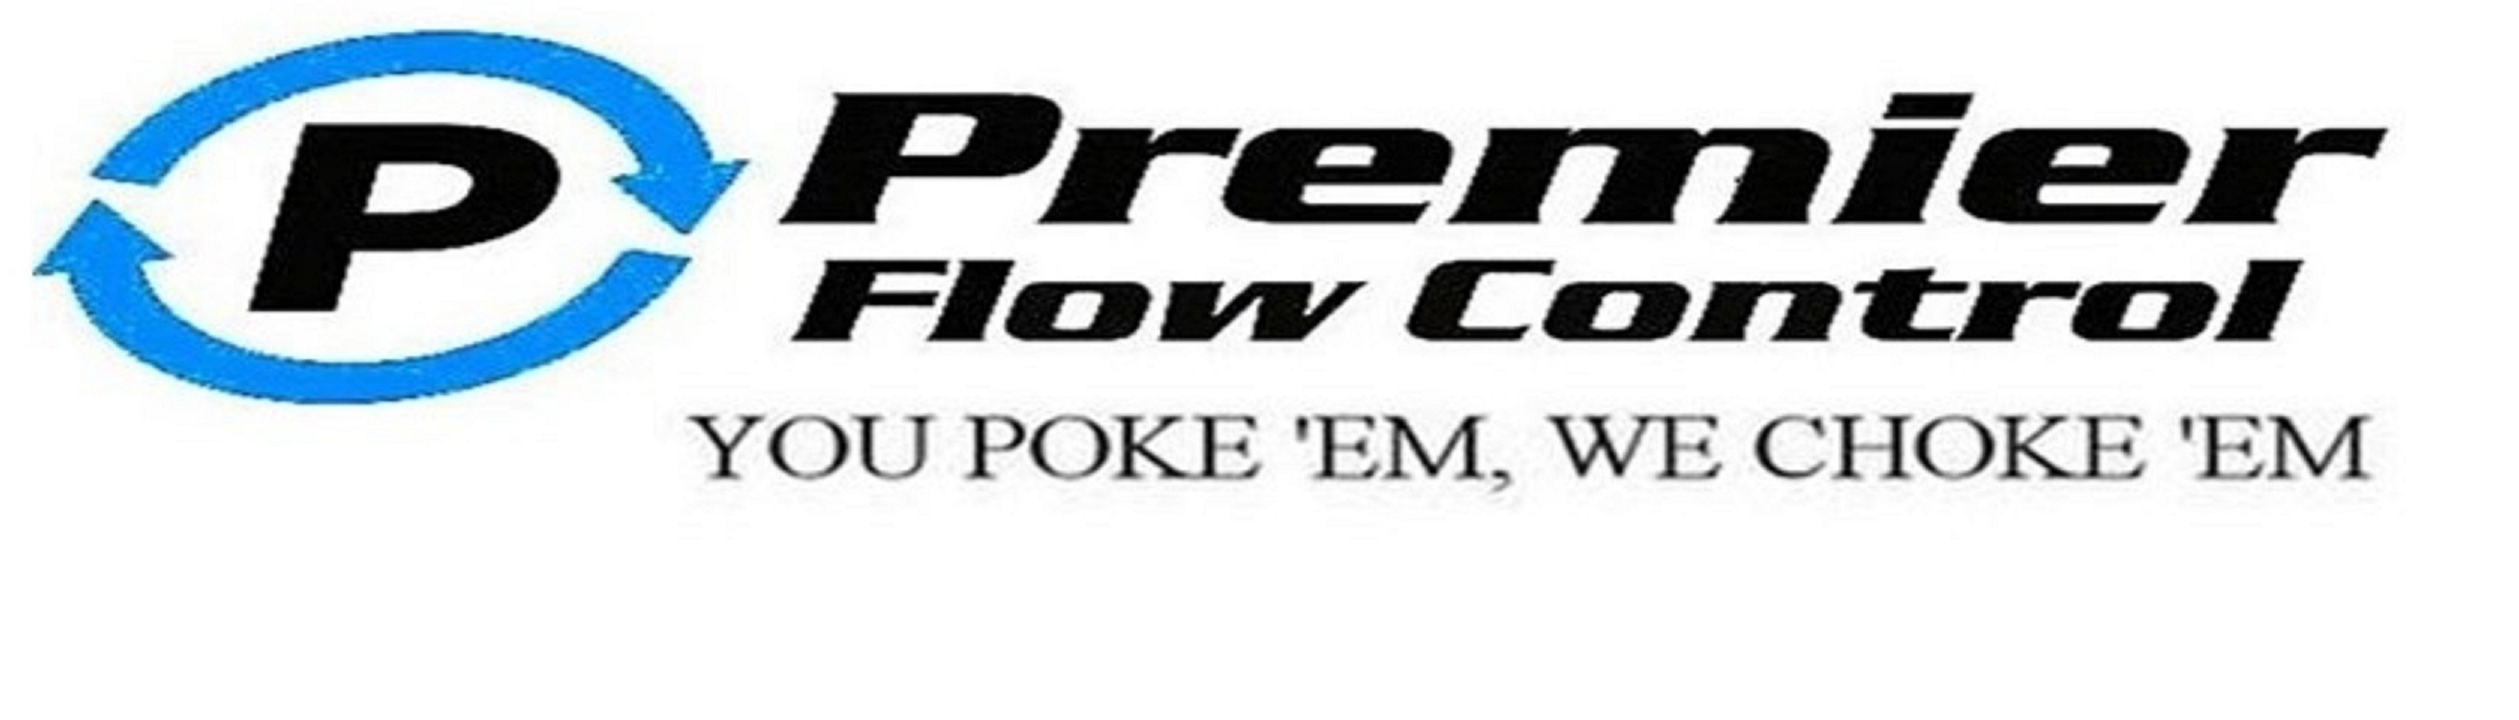 Premier Flow Control